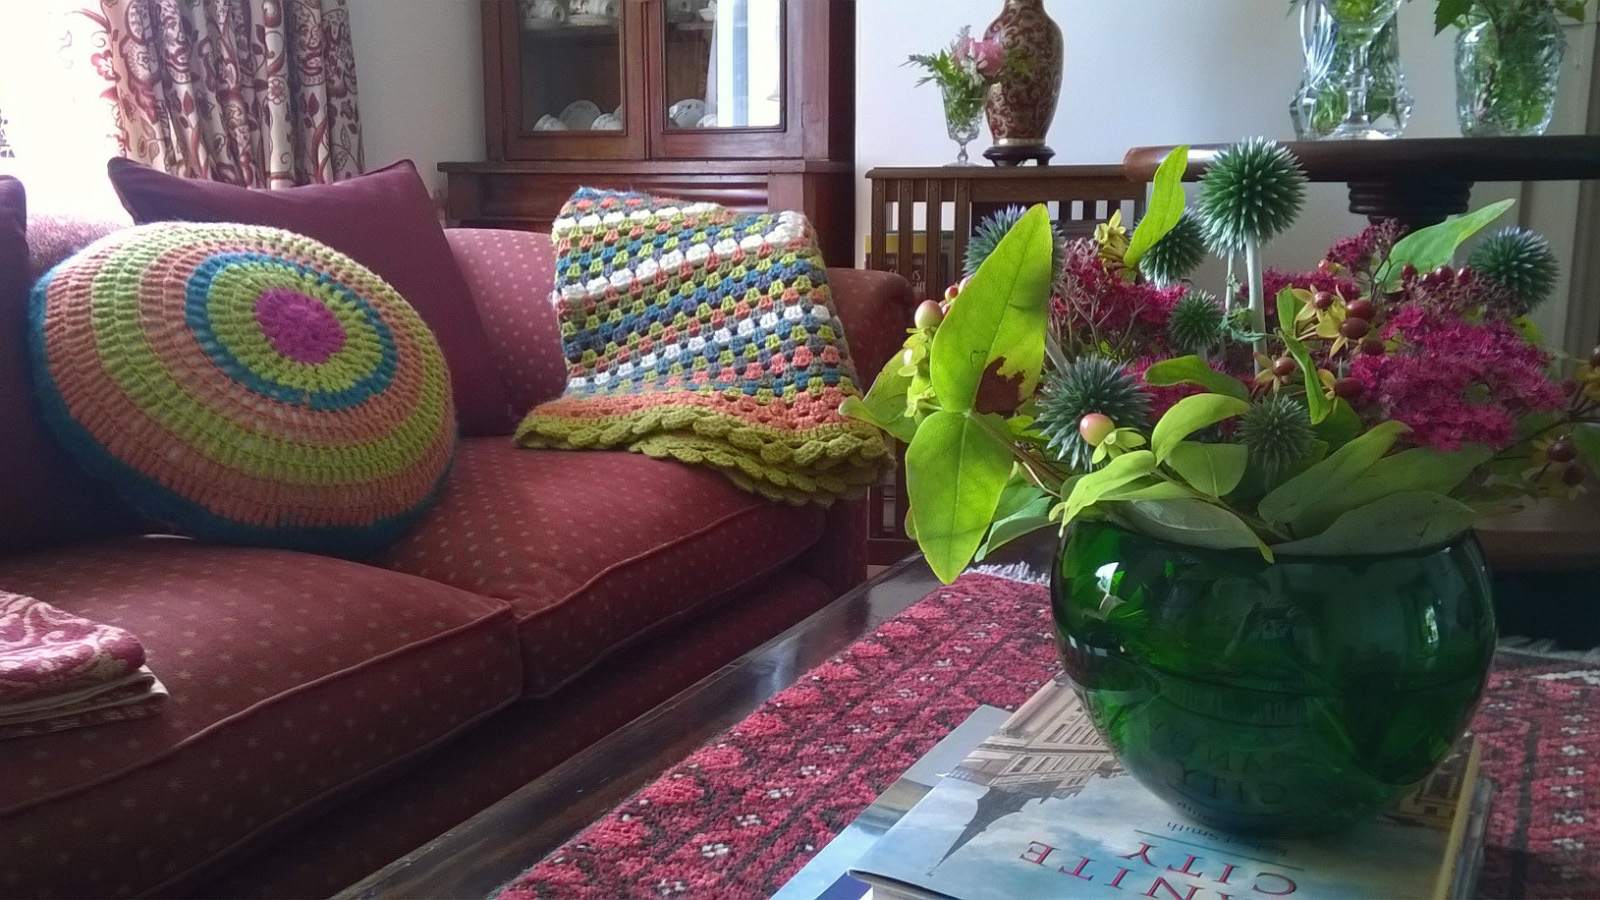 The Registry Guest House Crochet retreat learn to crochet weekend